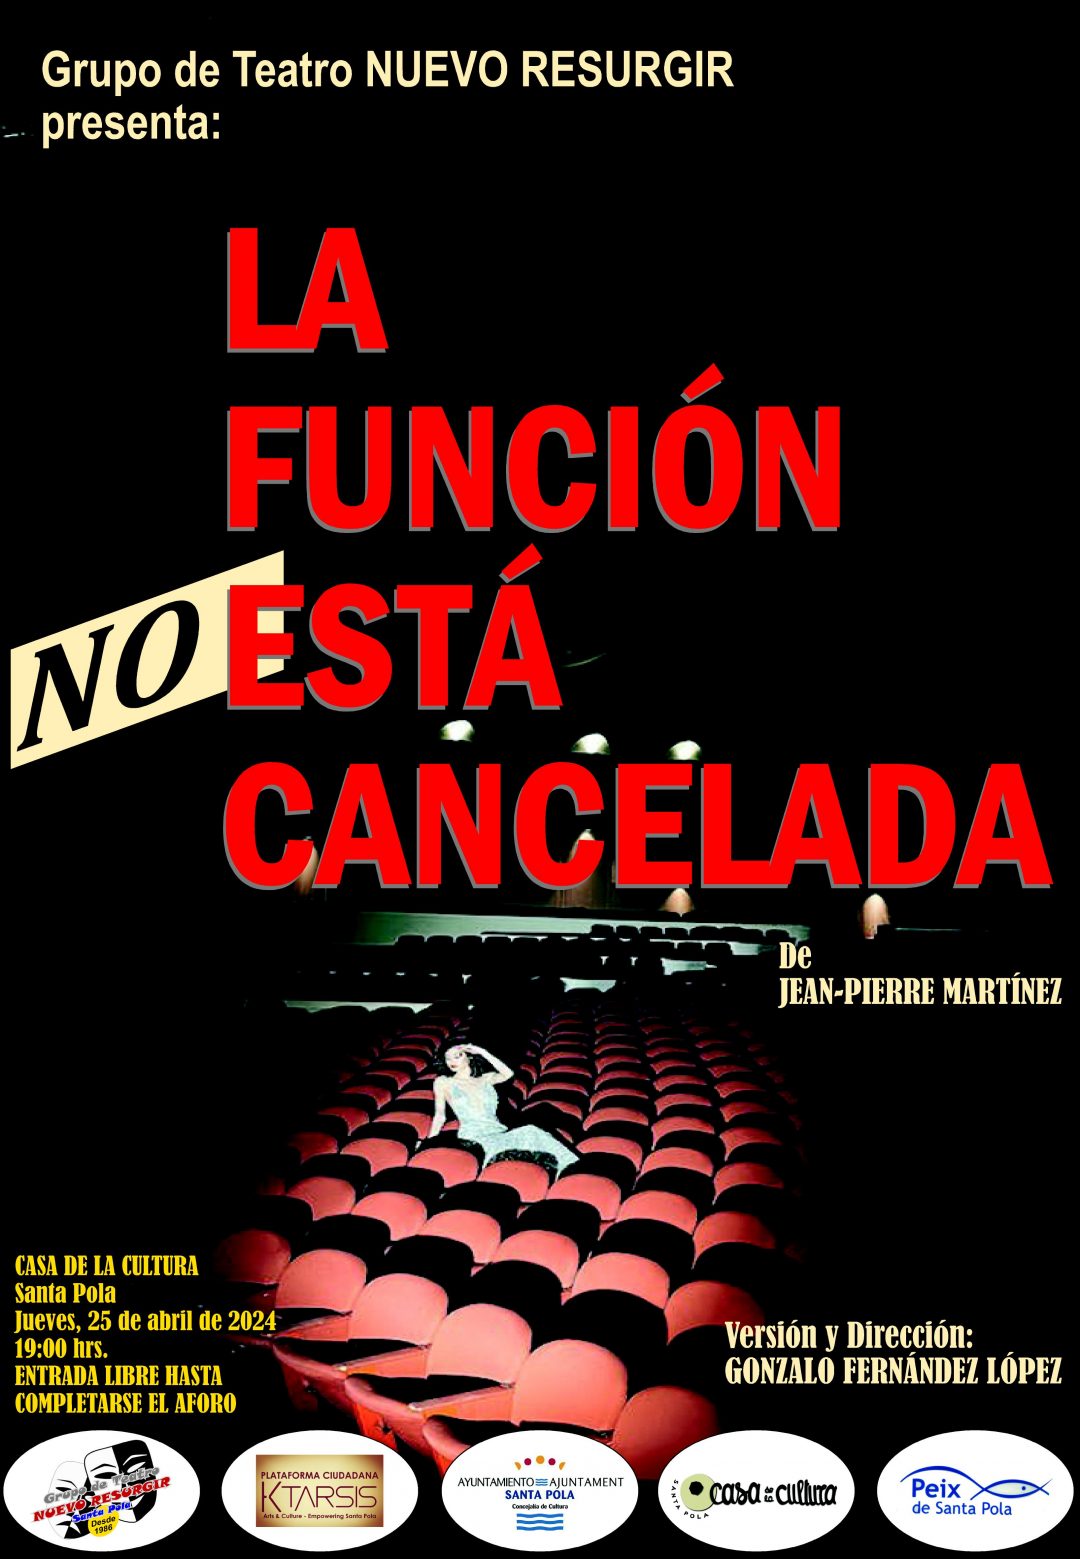 LA FUNCIÓN NO ESTÁ CANCELADA. Grupo Teatro Nuevo Resurgir